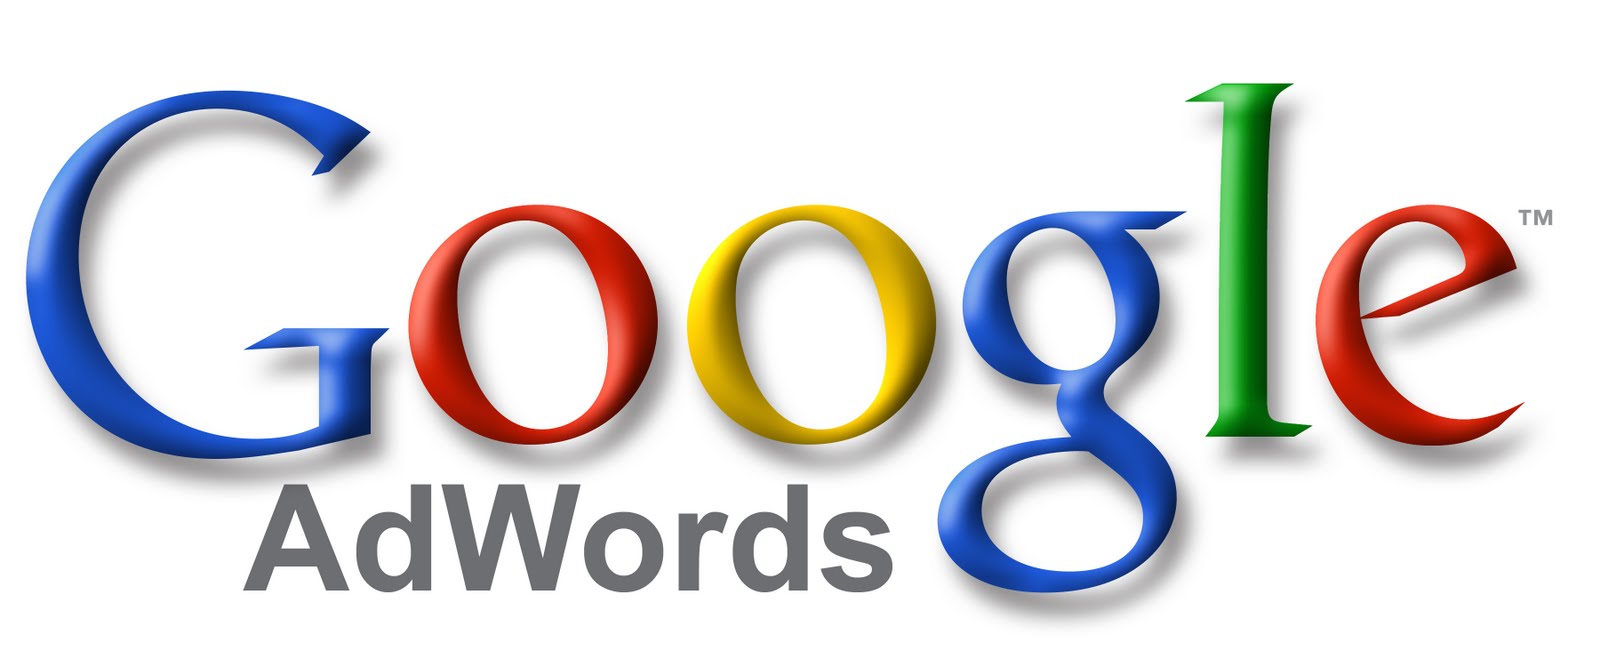 empresa de posicionamiento en google Adwords Ciudad Real, campañas y anuncios en Google, agencia de publicidad en google